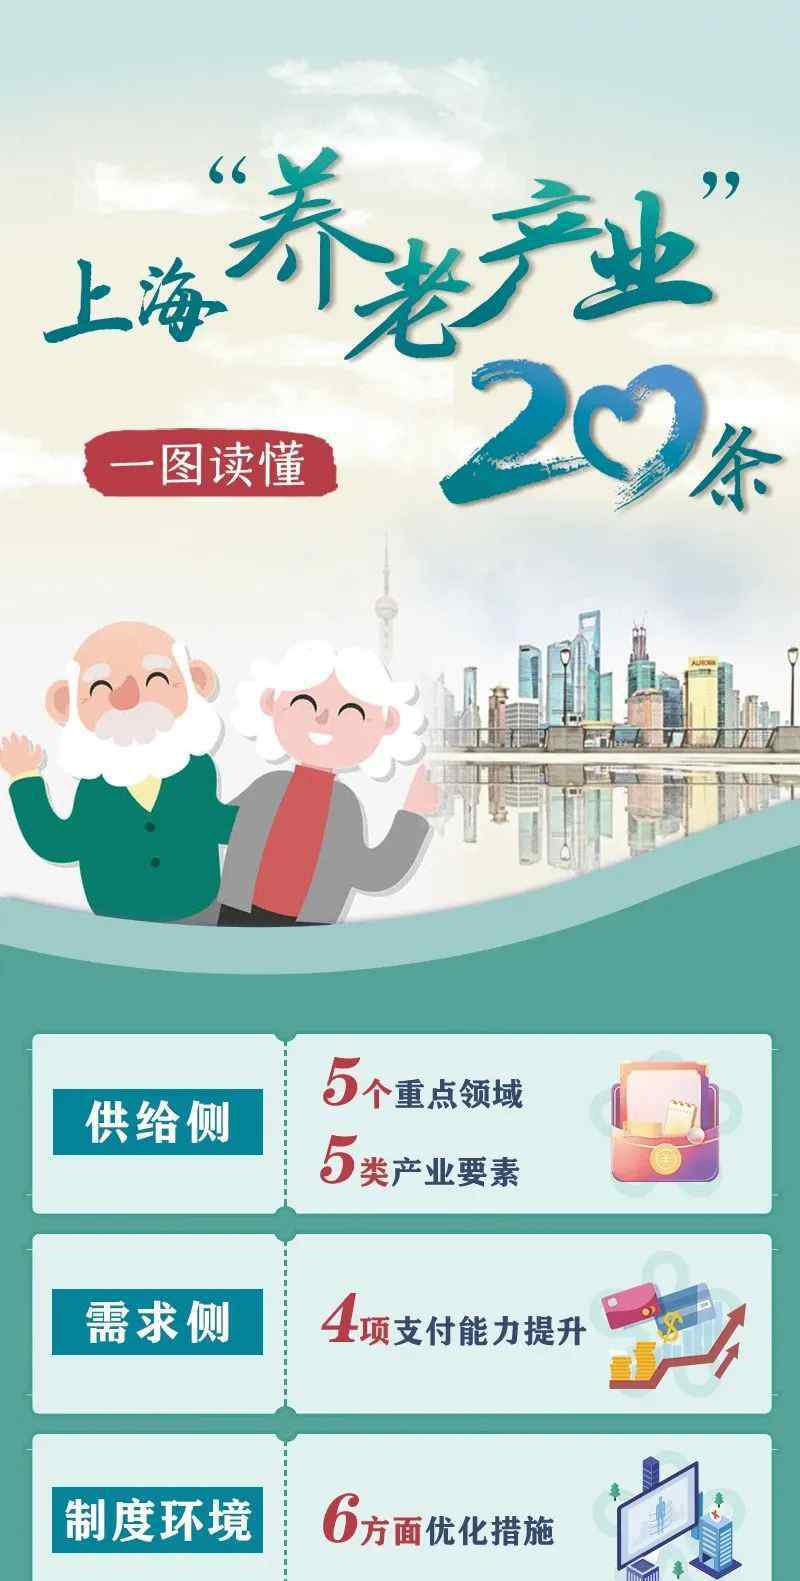 上海户籍人口 上海户籍老年人口比例超35%，老龄化程度再加深